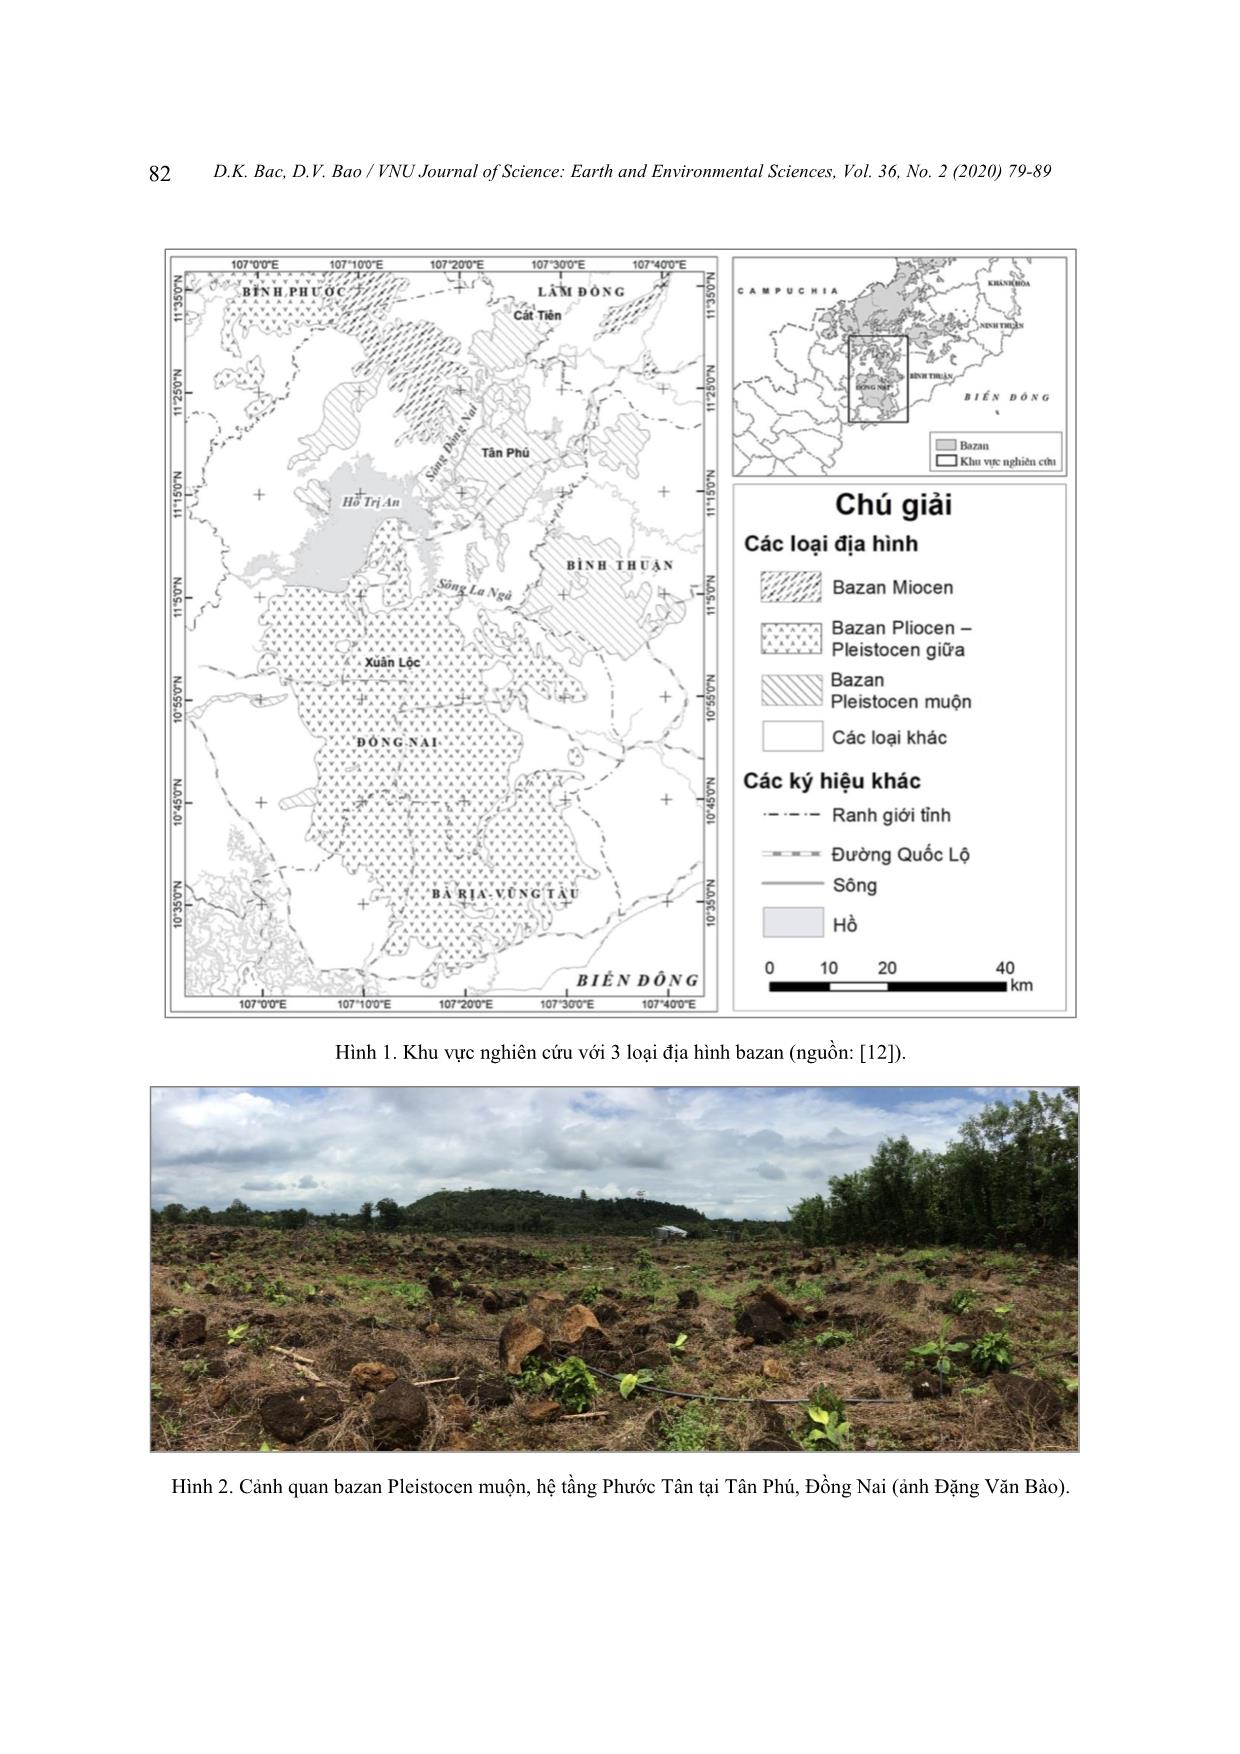 Phân tích các yếu tố sinh-Địa-hóa trong mối liên quan với xu hướng sử dụng đất trên địa hình bazan khu vực Đồng Nai và phụ cận trang 4